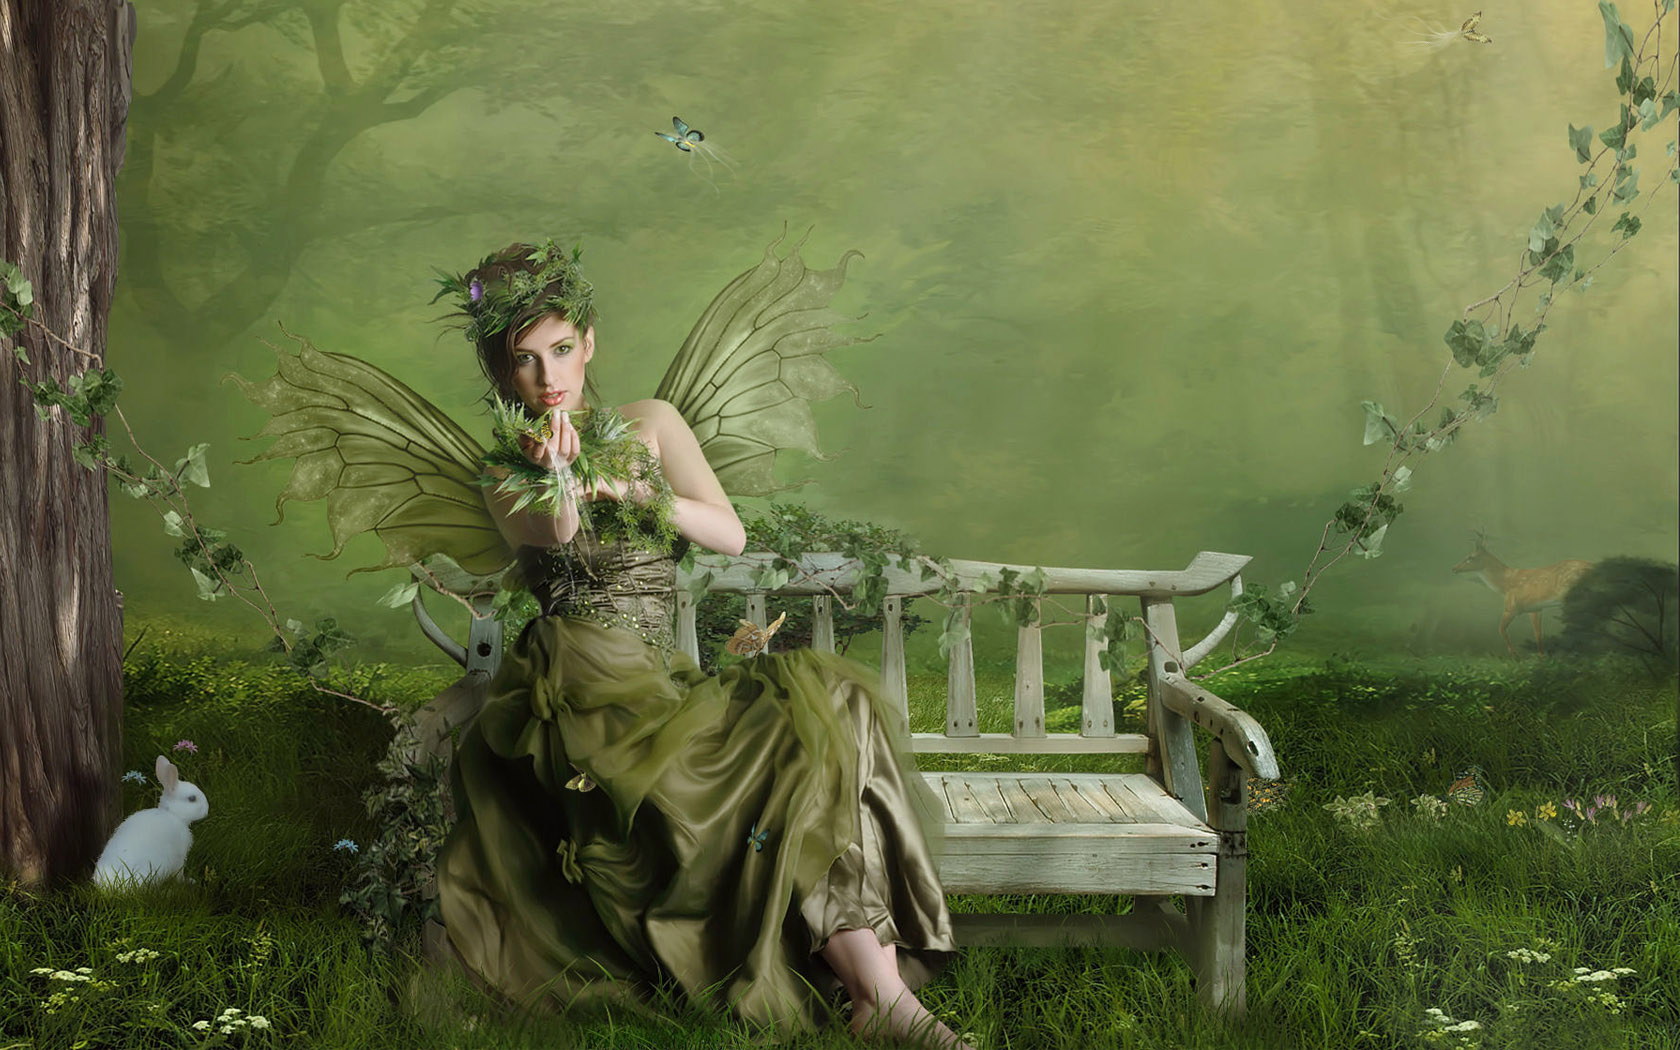 HD desktop wallpaper featuring a green fairy